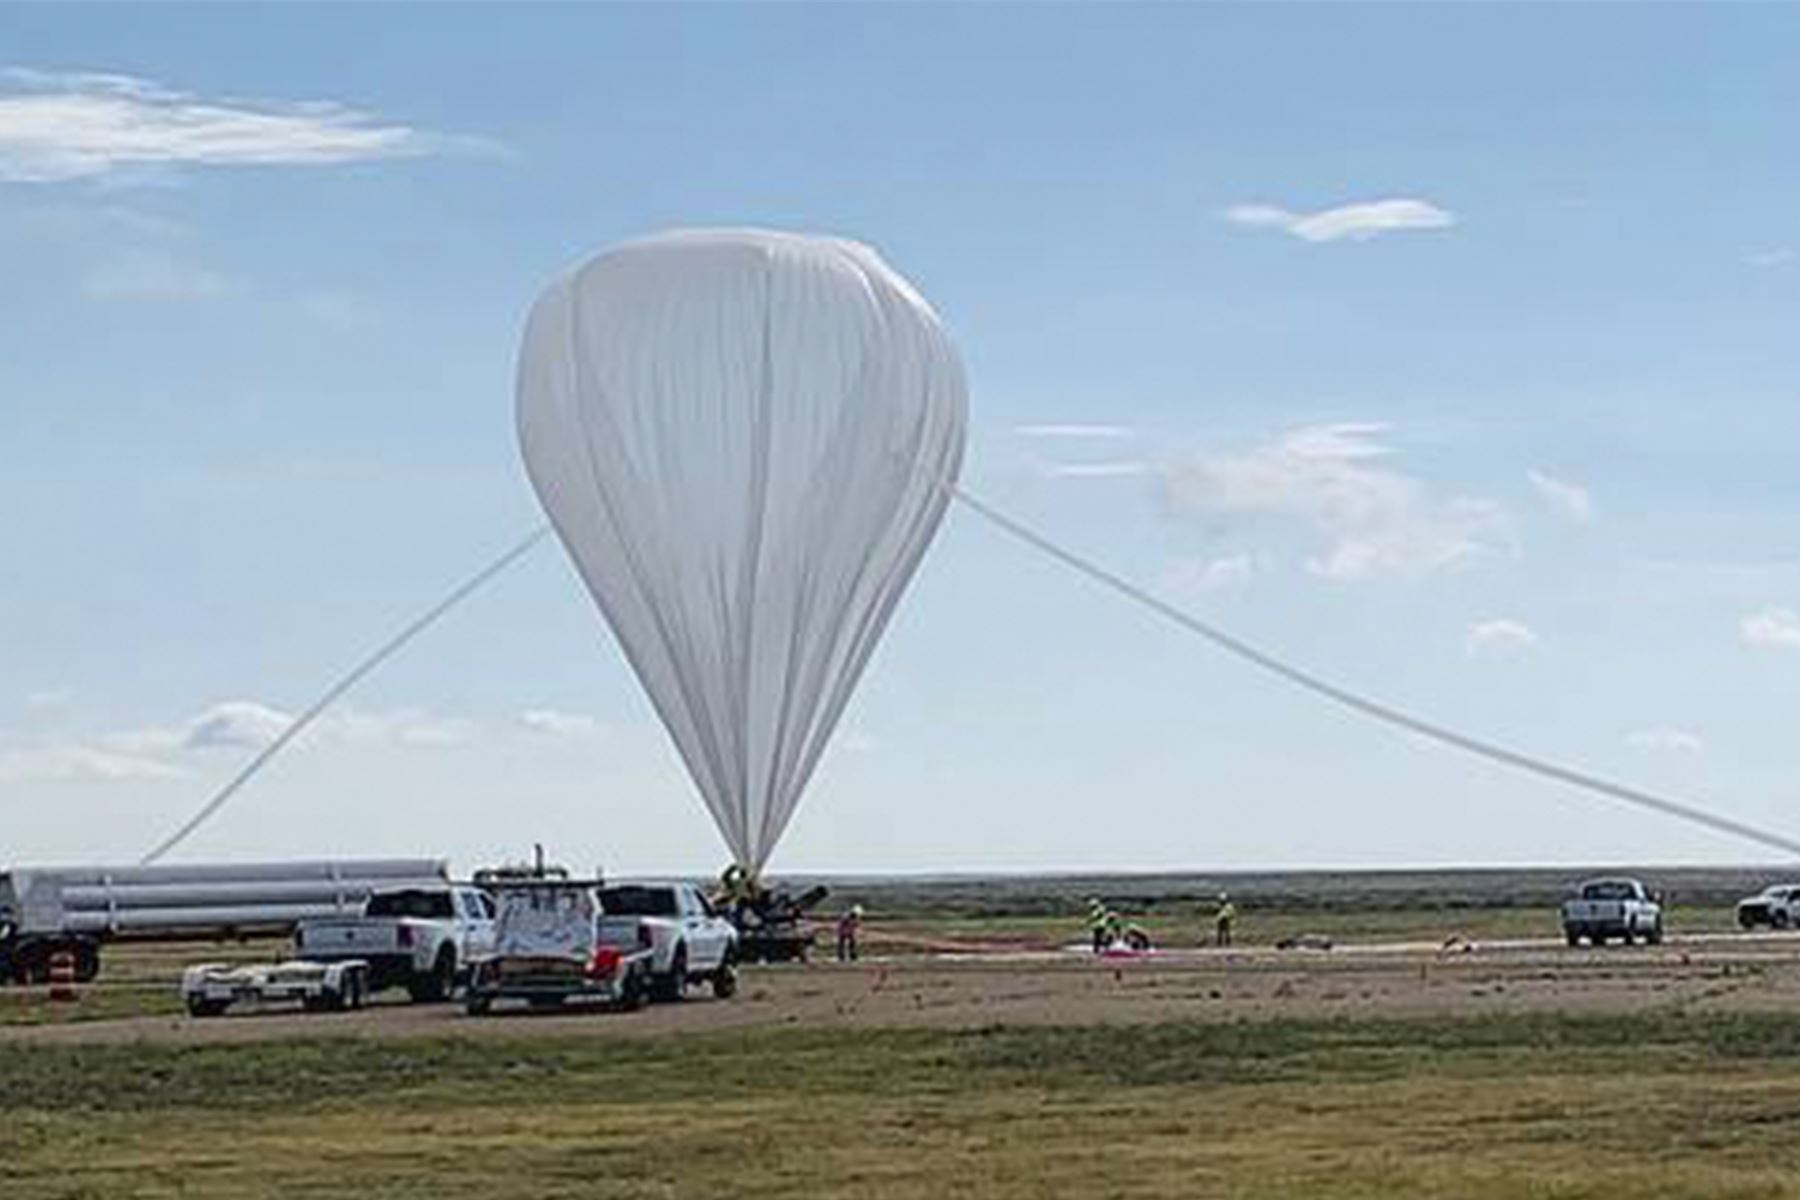 NASA destaca participación de alumnos UNI en lanzamiento de globo estratosférico | Noticias | Agencia Peruana de Noticias Andina